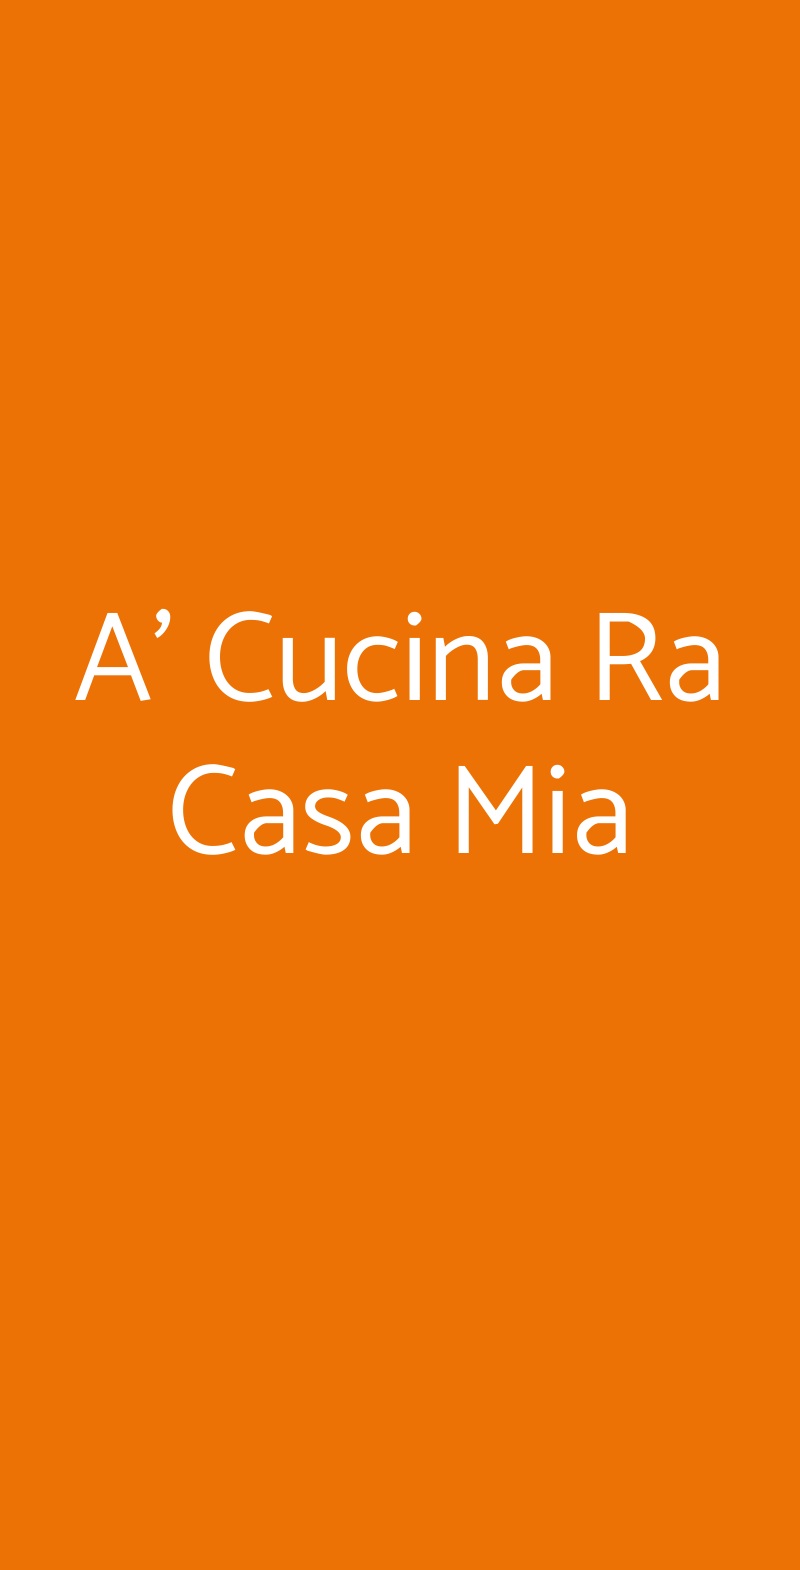 A' Cucina Ra Casa Mia Napoli menù 1 pagina